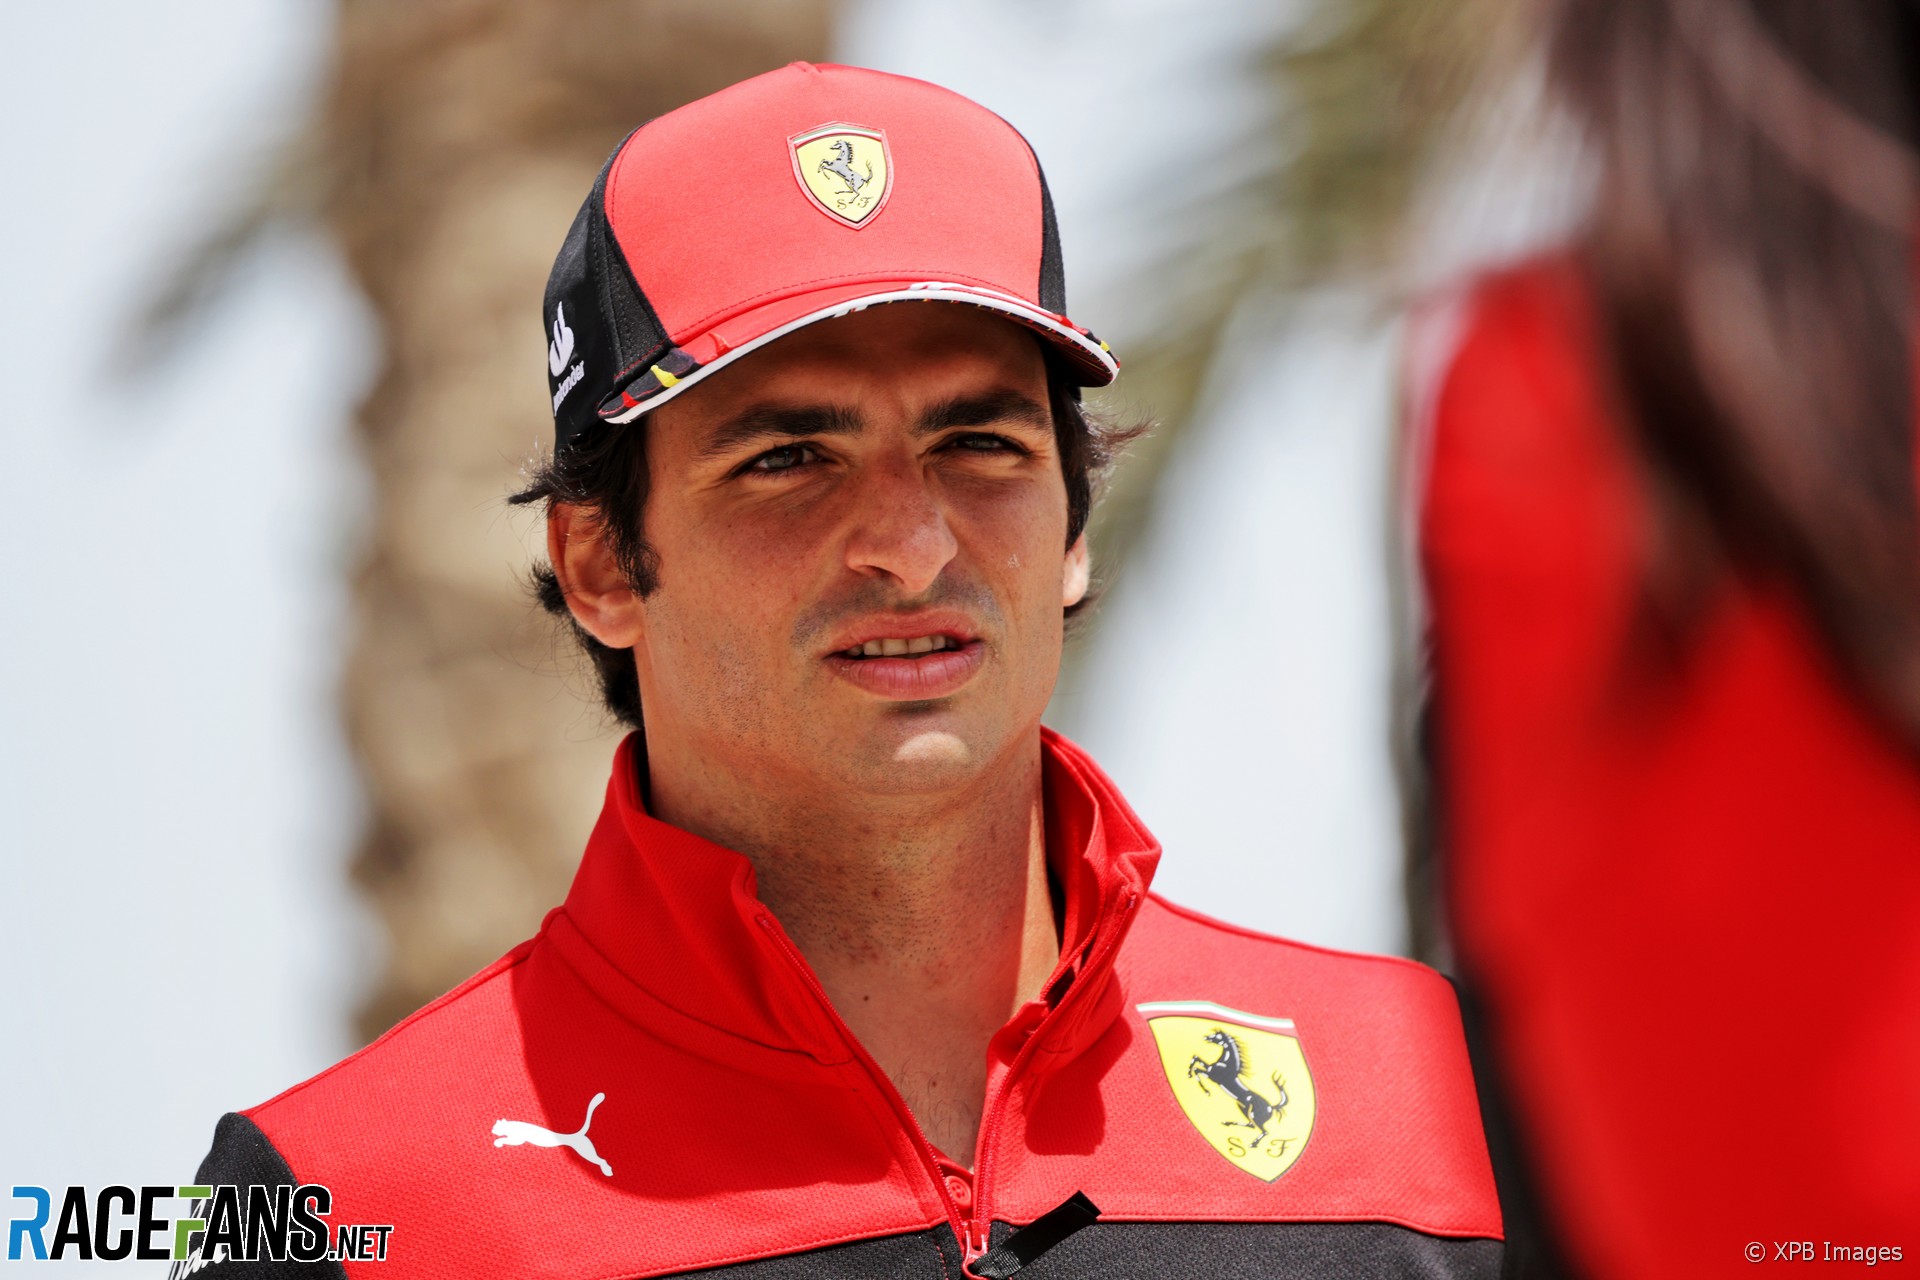 Carlos Sainz Jnr, Ferrari, Bahrain International Circuit, 2022